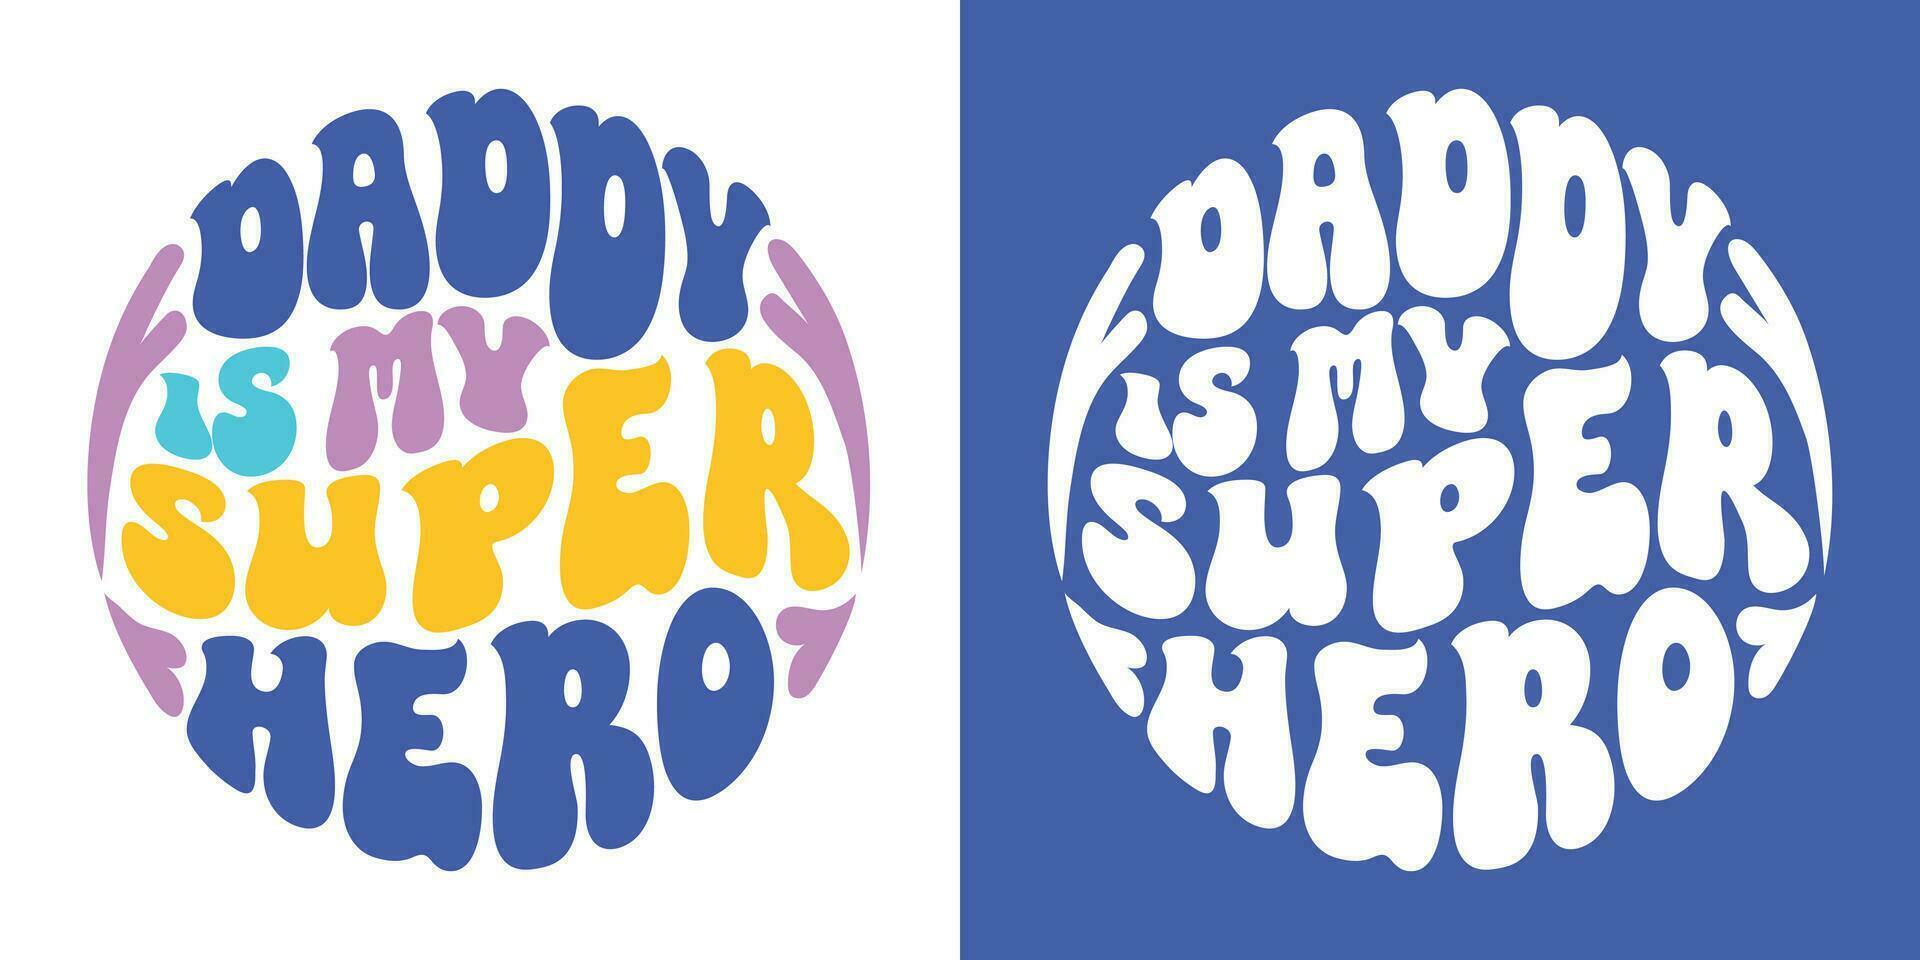 retro groovig Schriftzug-Papa ist meine Super Held. retro Slogan im runden Form. bunt modisch drucken Design zum Poster, Karten, T-Shirts im Hippie Stil 60er, 70er. vektor